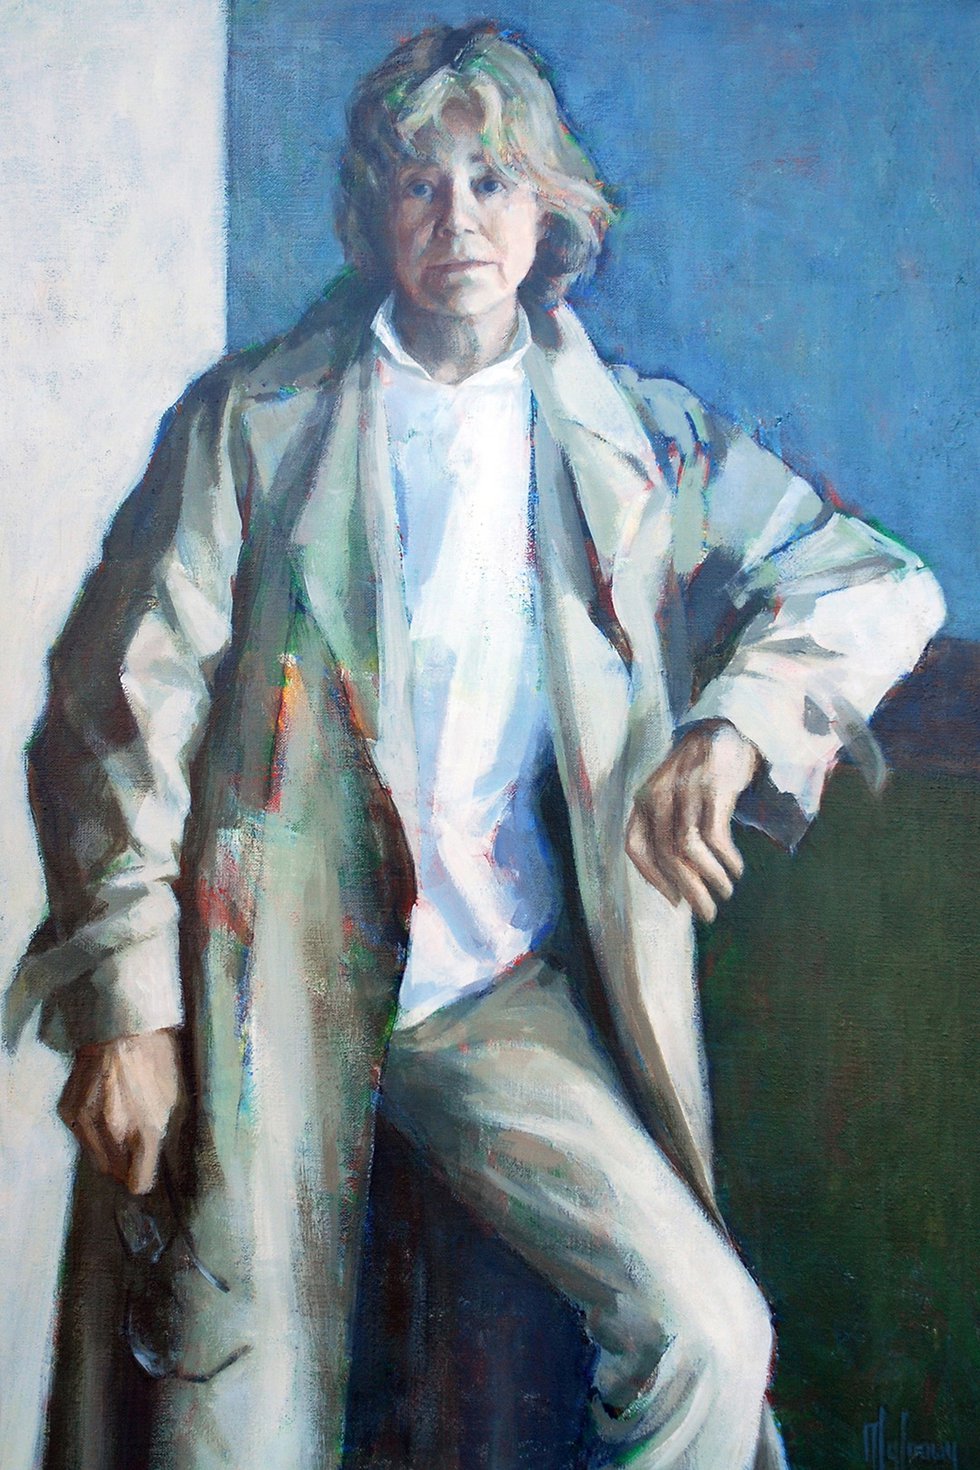 Myfanwy Pavelic, "Raincoat (Self-Portrait)," 1987